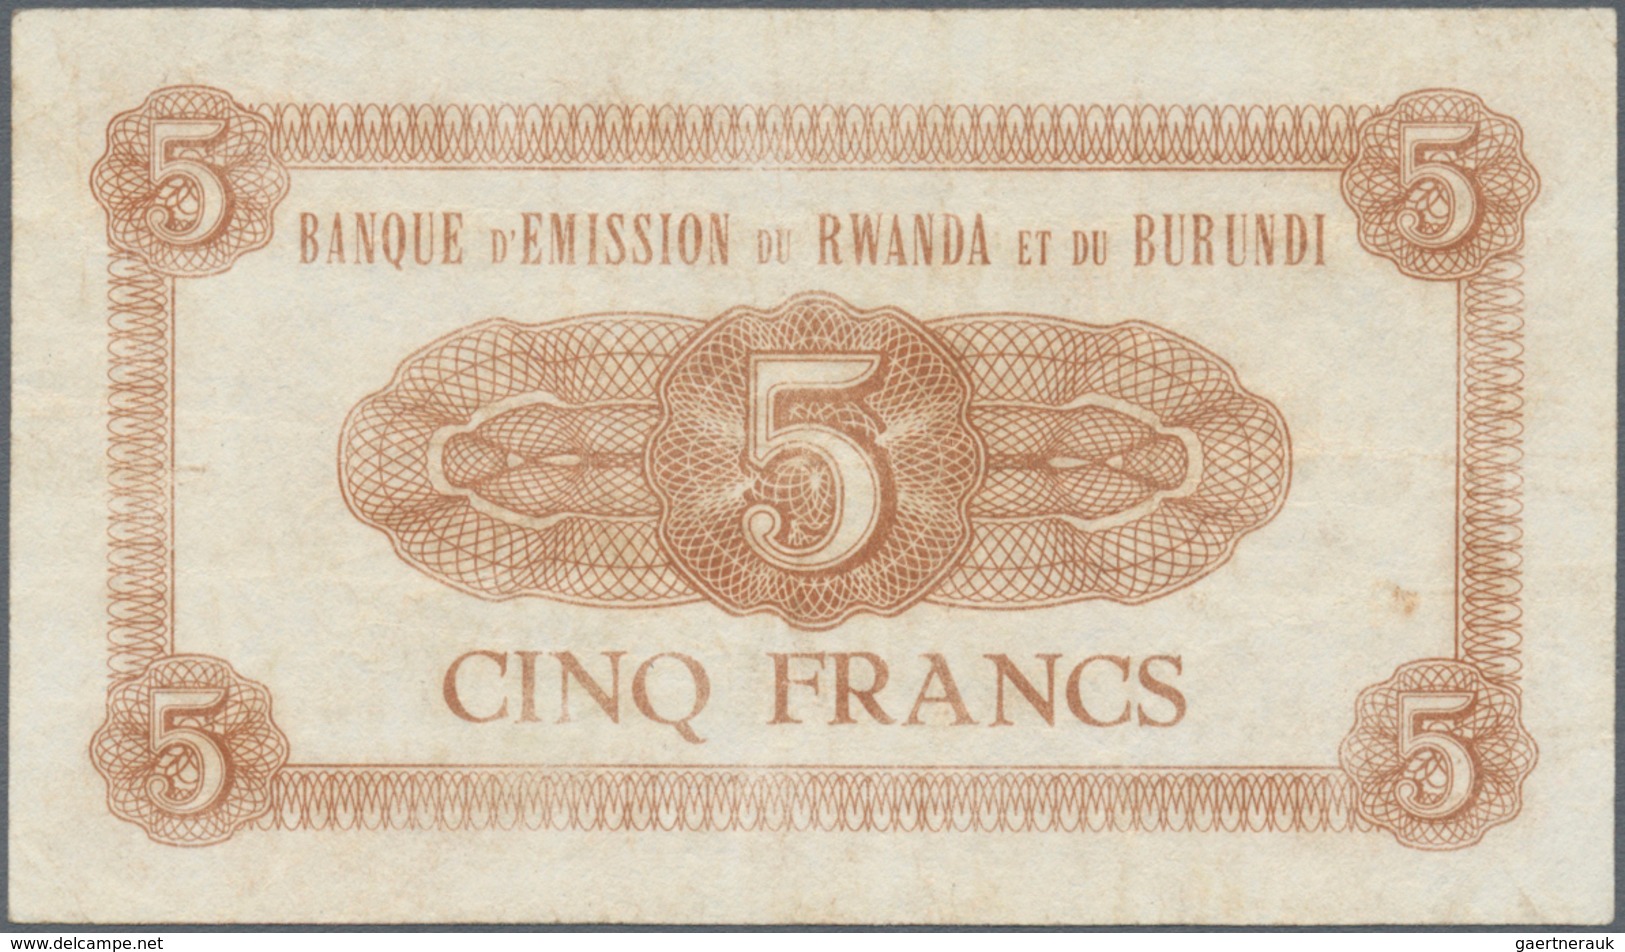 Rwanda-Burundi / Ruanda-Burundi: 5 Francs 1961 Banque D'Emission Du Rwanda Et Du Burundi P. 1, Used - Ruanda-Burundi